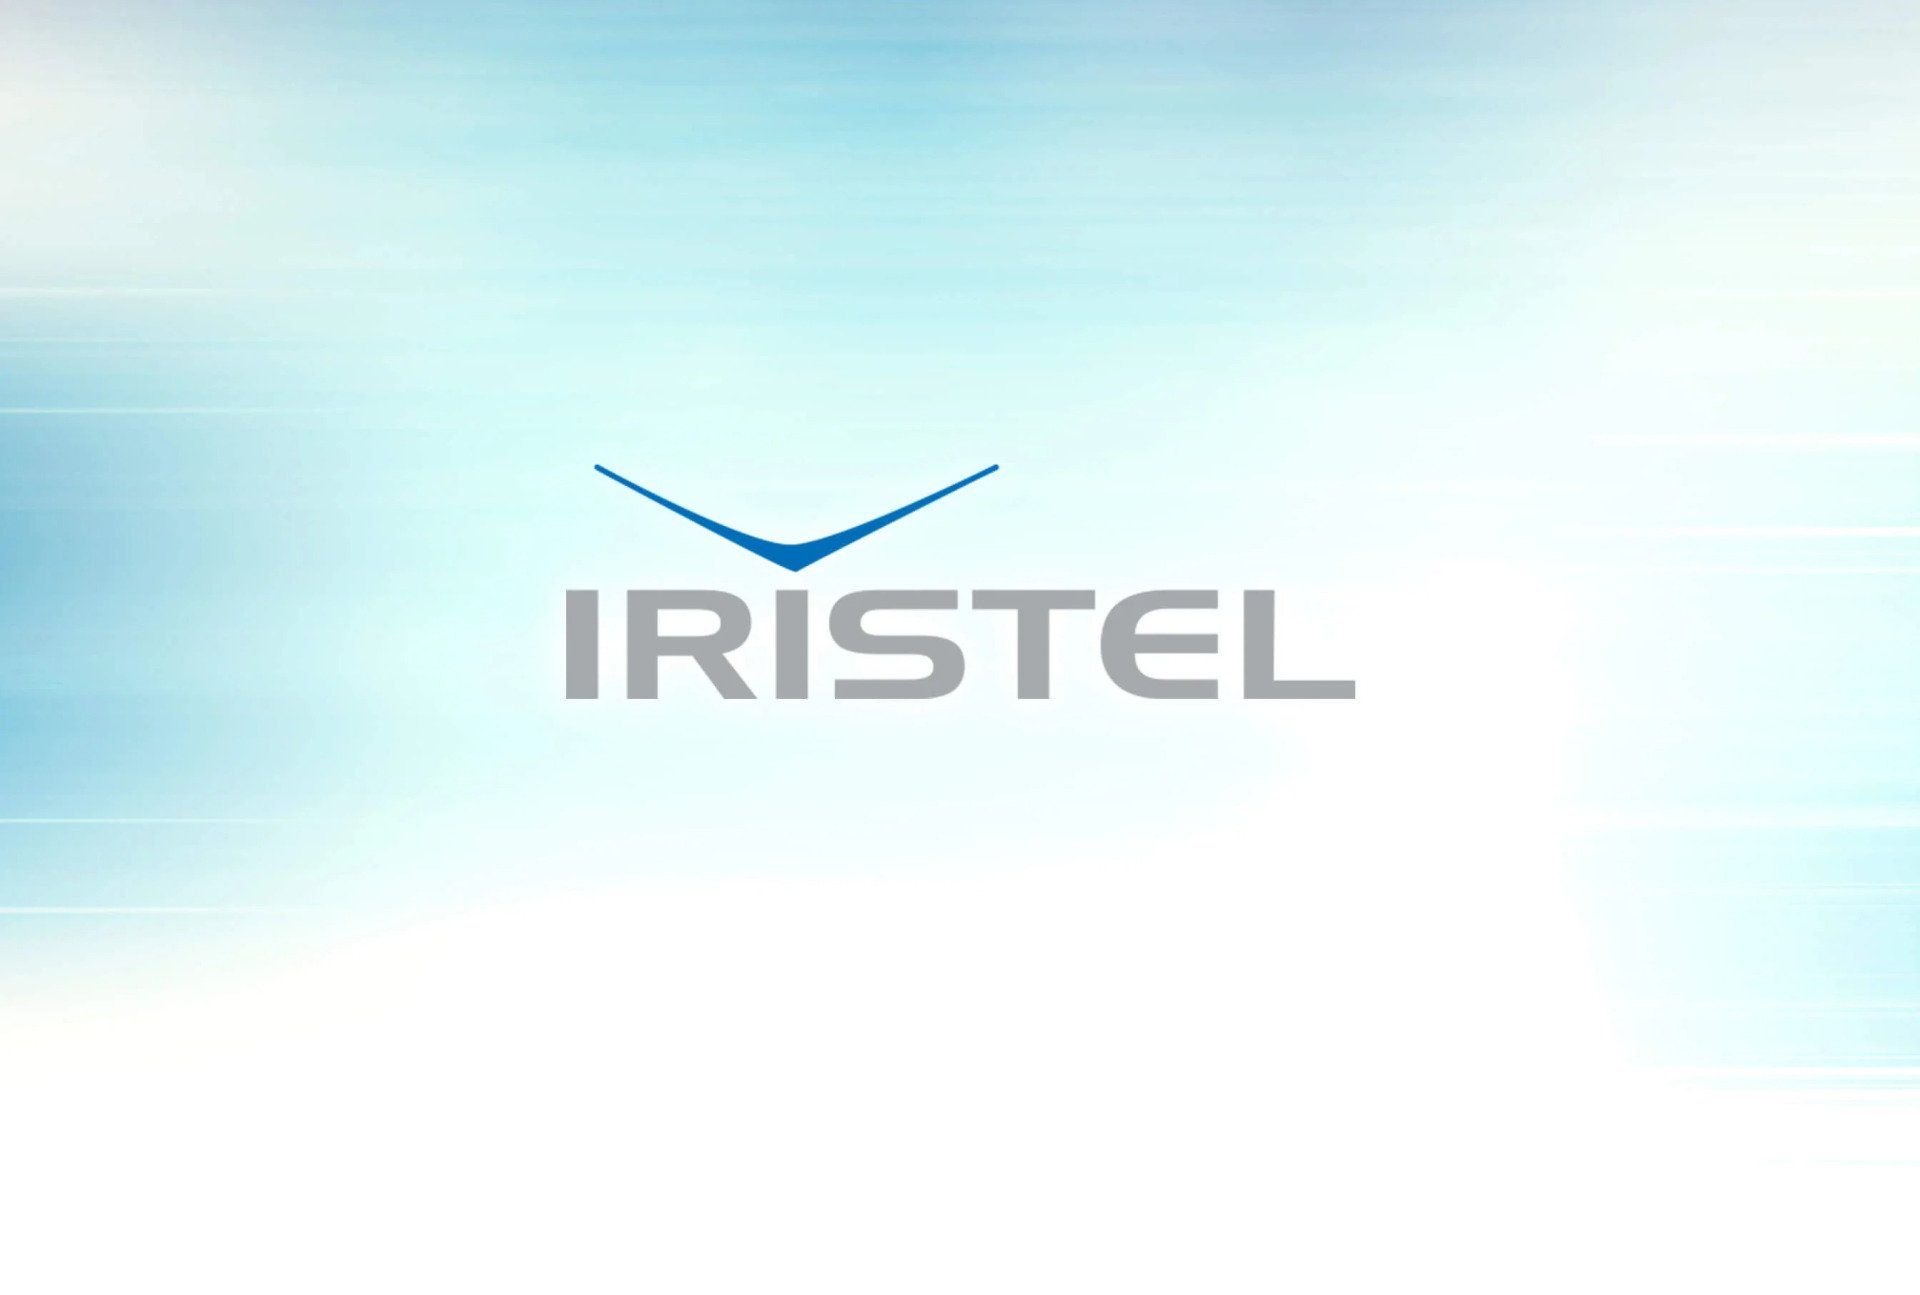 Iristel on colorful background - Logo